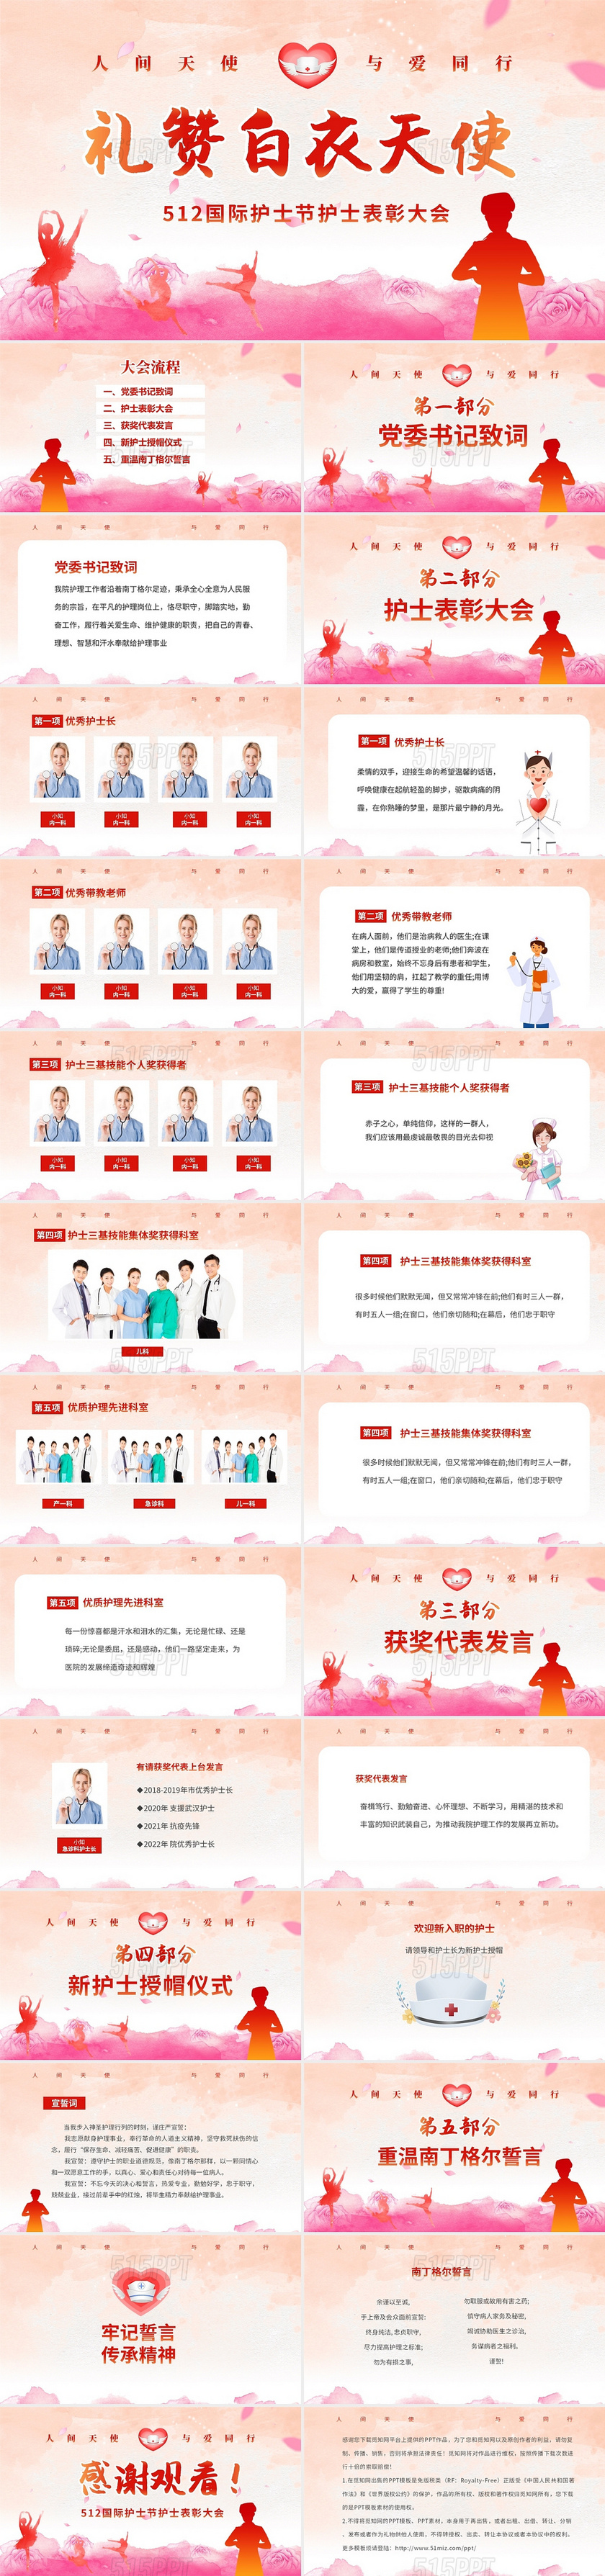 水彩清新512国际护士节表彰大会PPT512护士节表彰大会